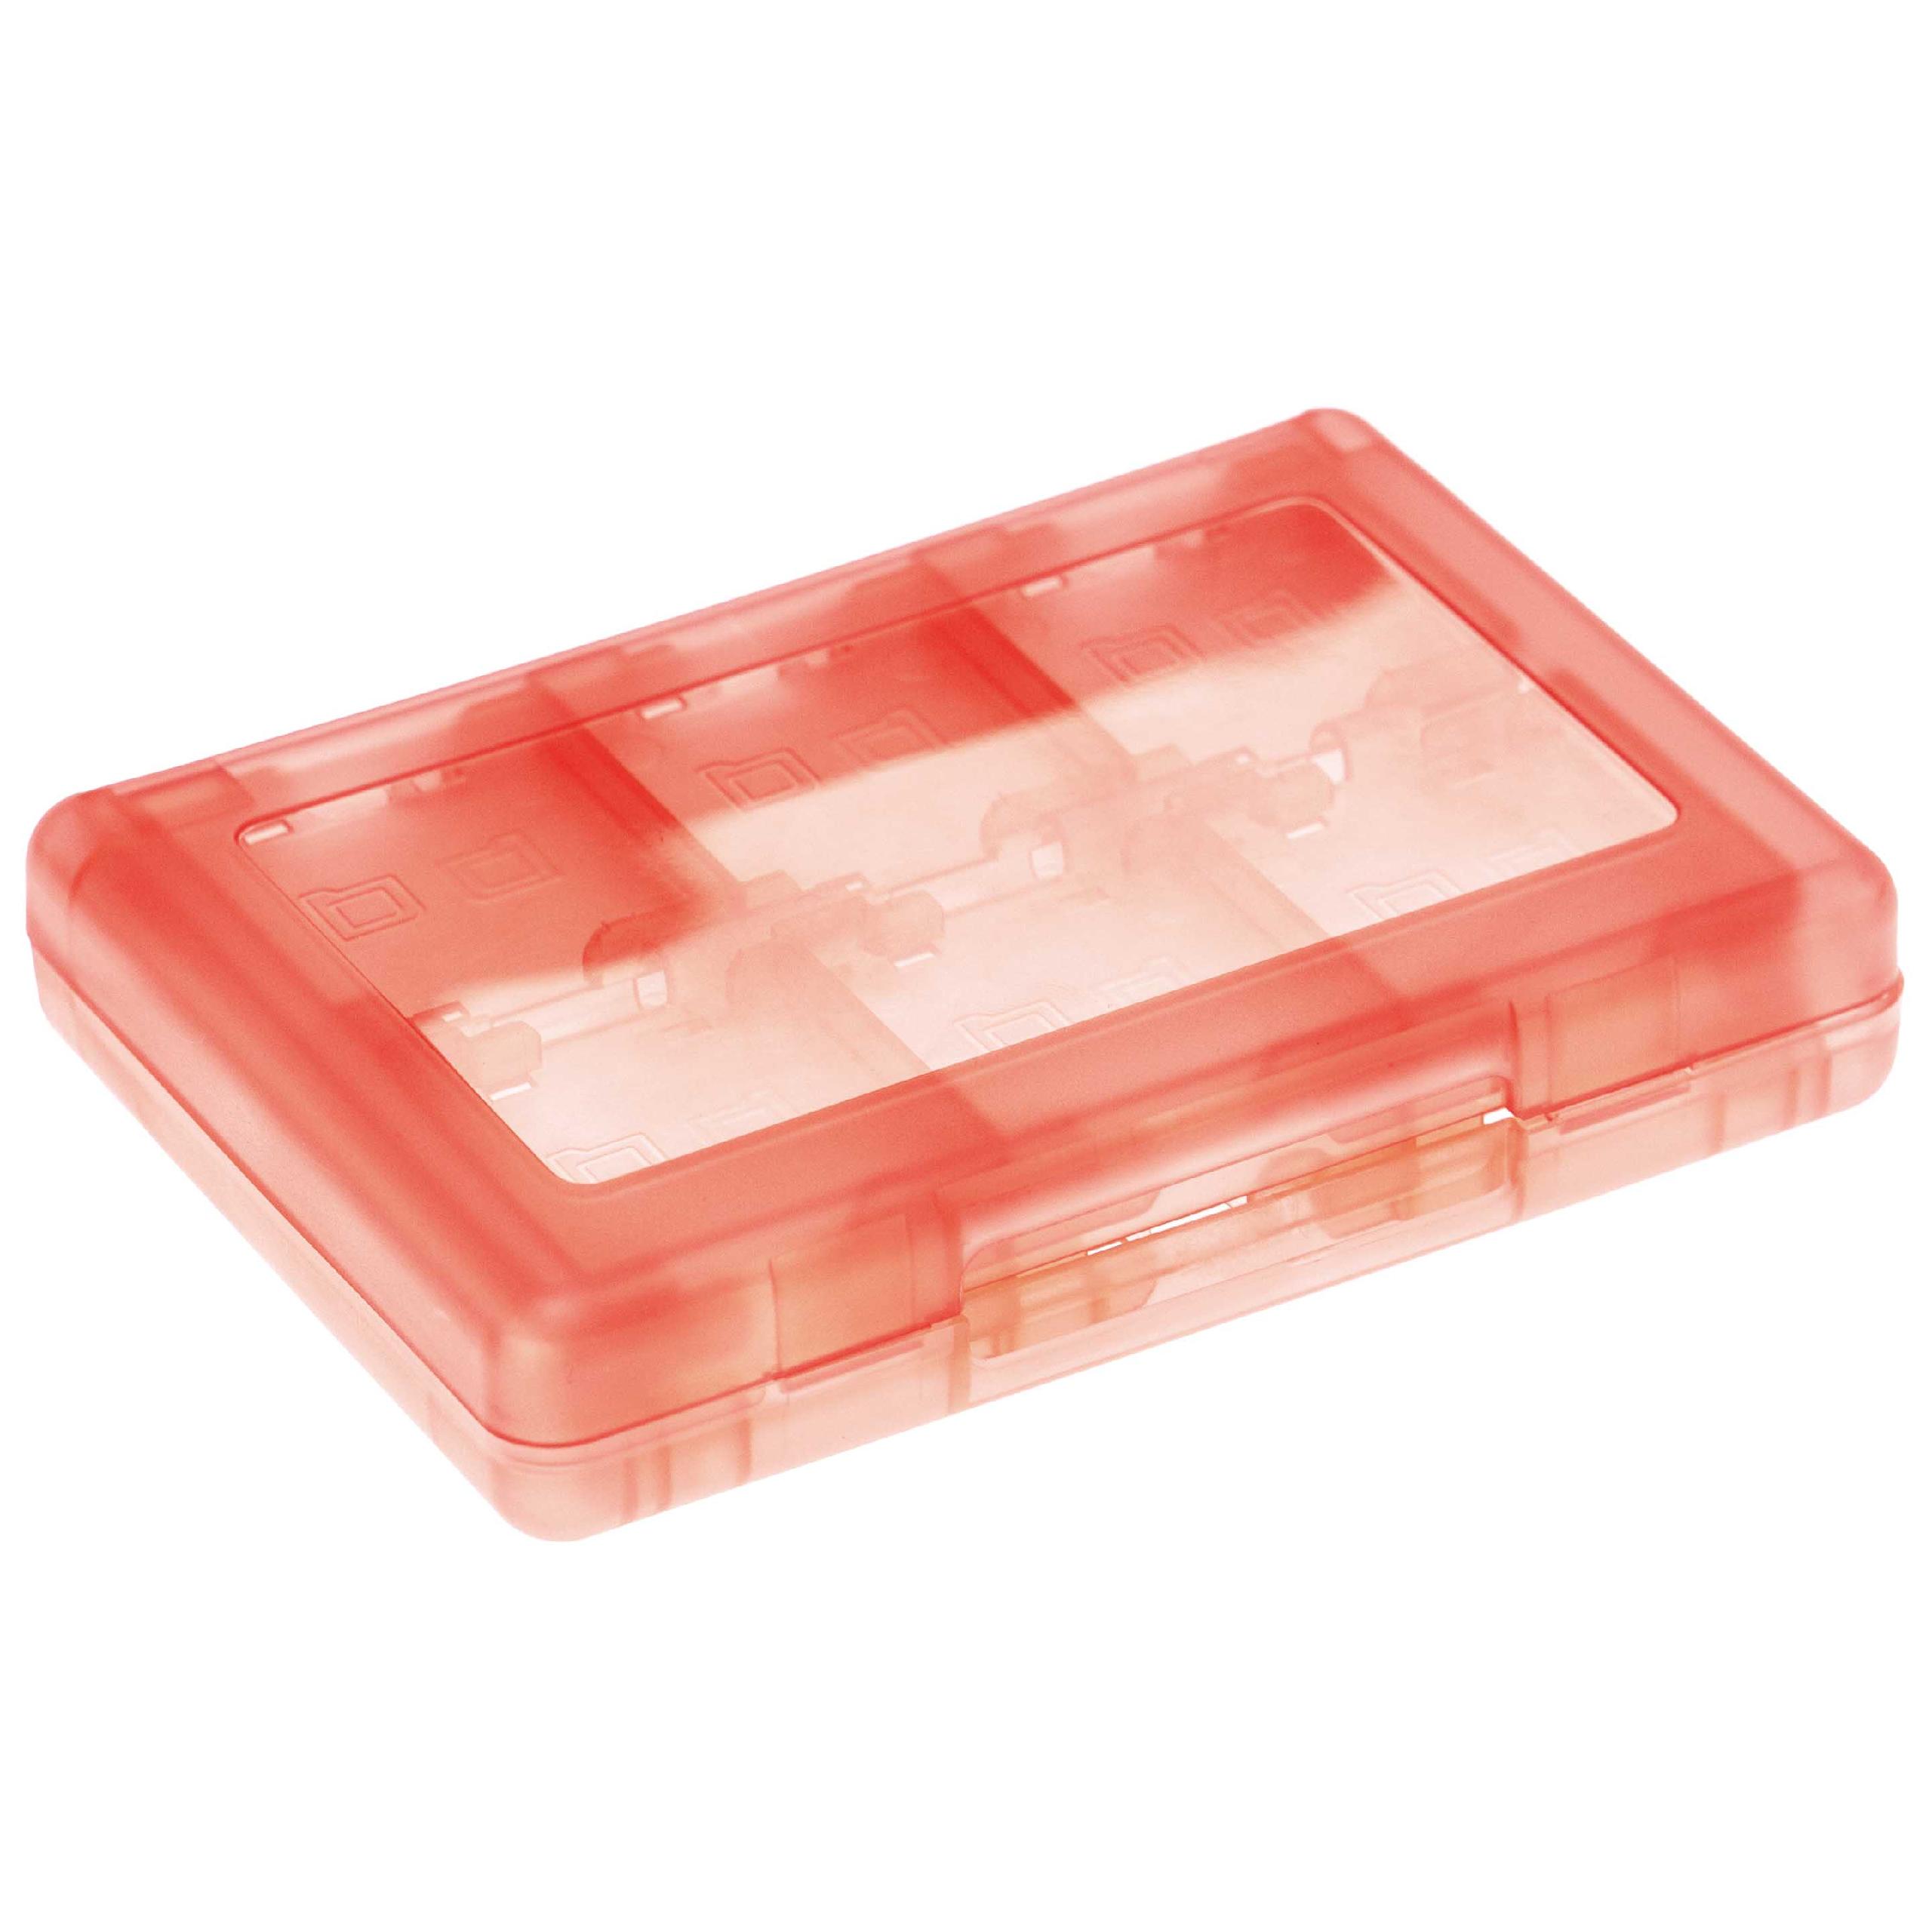 Etui pour jeux de console et carte mémoire pour Nintendo 3DS - Album, plastique, transparent / rouge